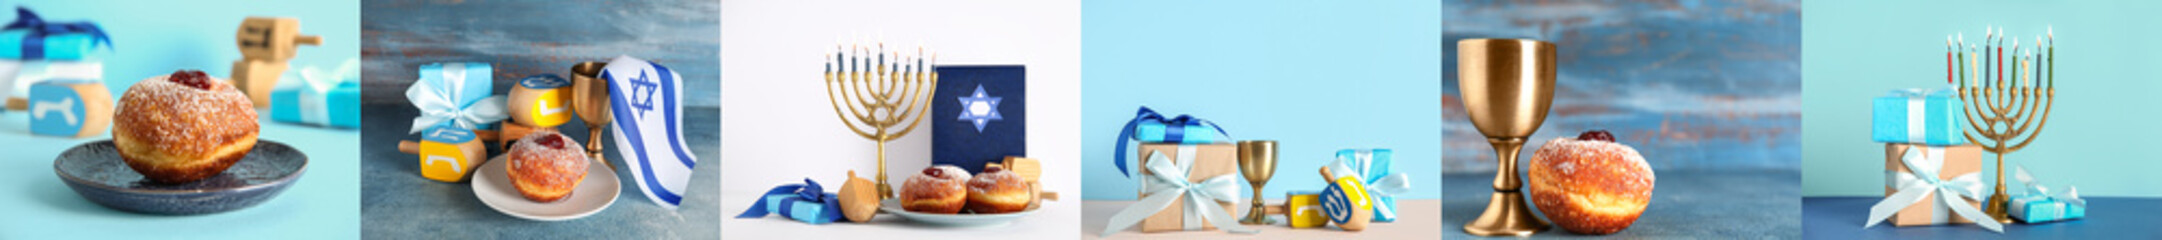 Set of symbols for Hanukkah celebration on light and blue backgrounds